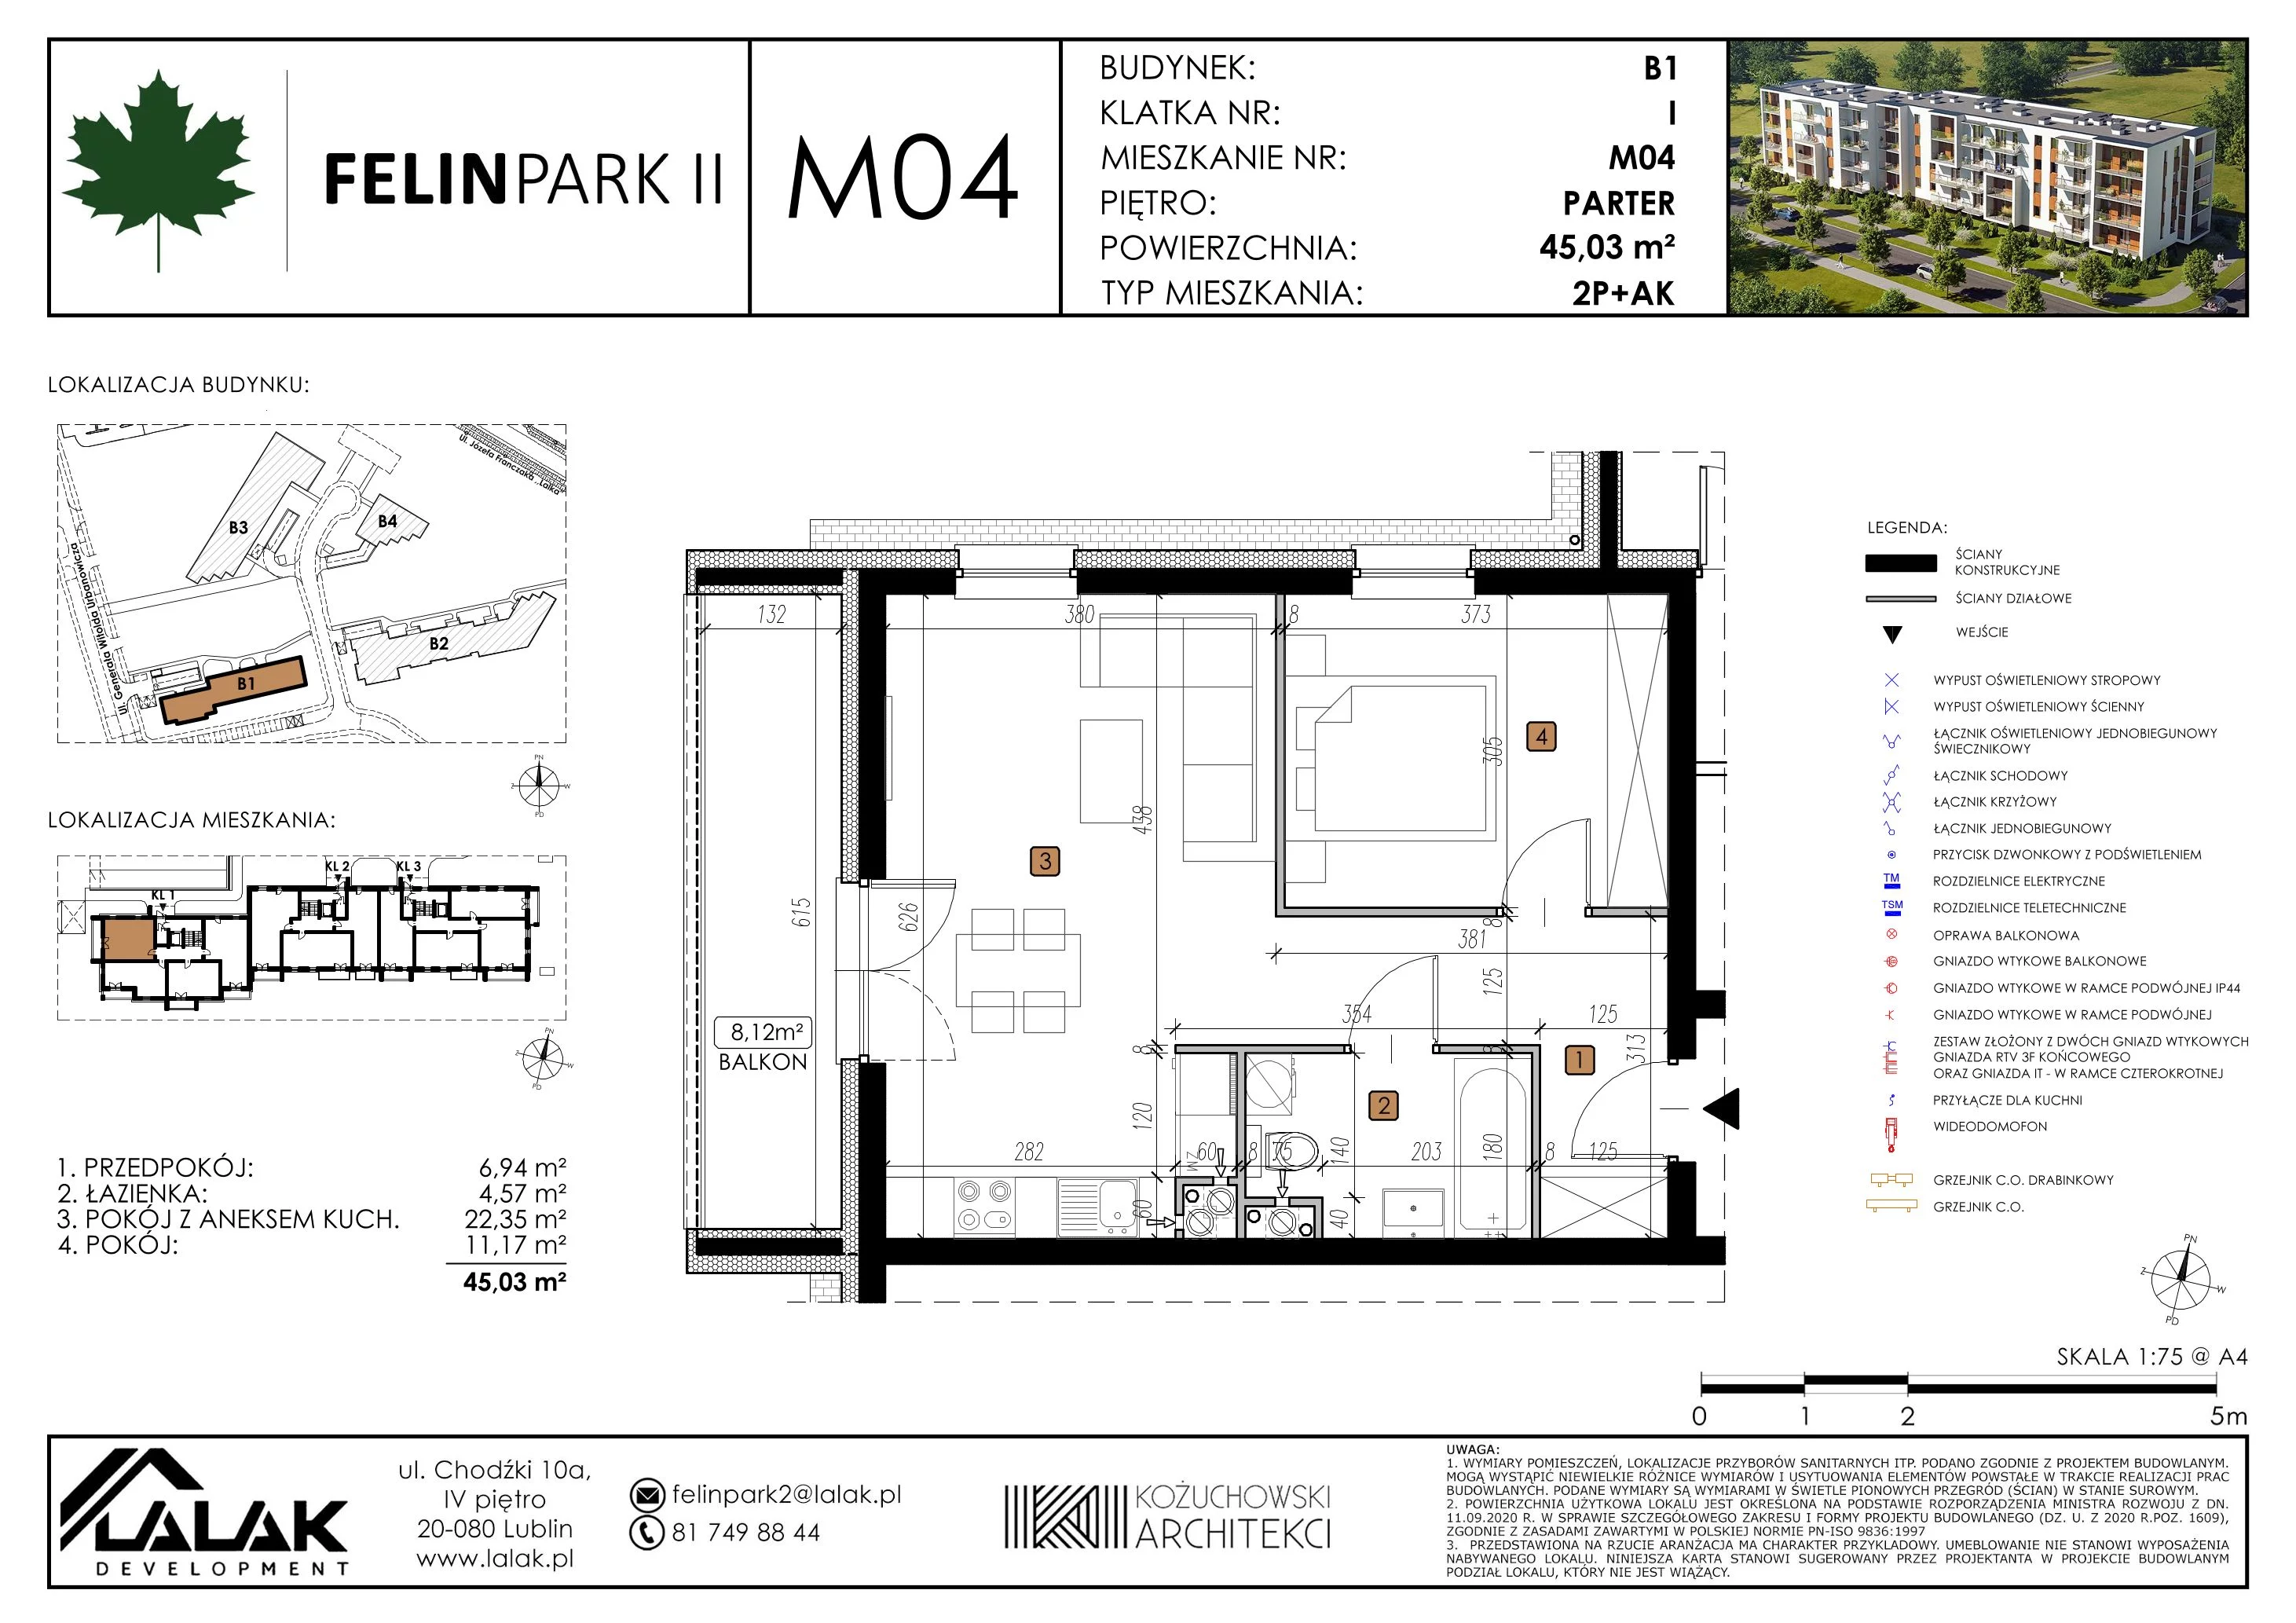 Mieszkanie 45,03 m², parter, oferta nr B1_M4/P, Felin Park II, Lublin, Felin, ul. gen. Stanisława Skalskiego 8-10